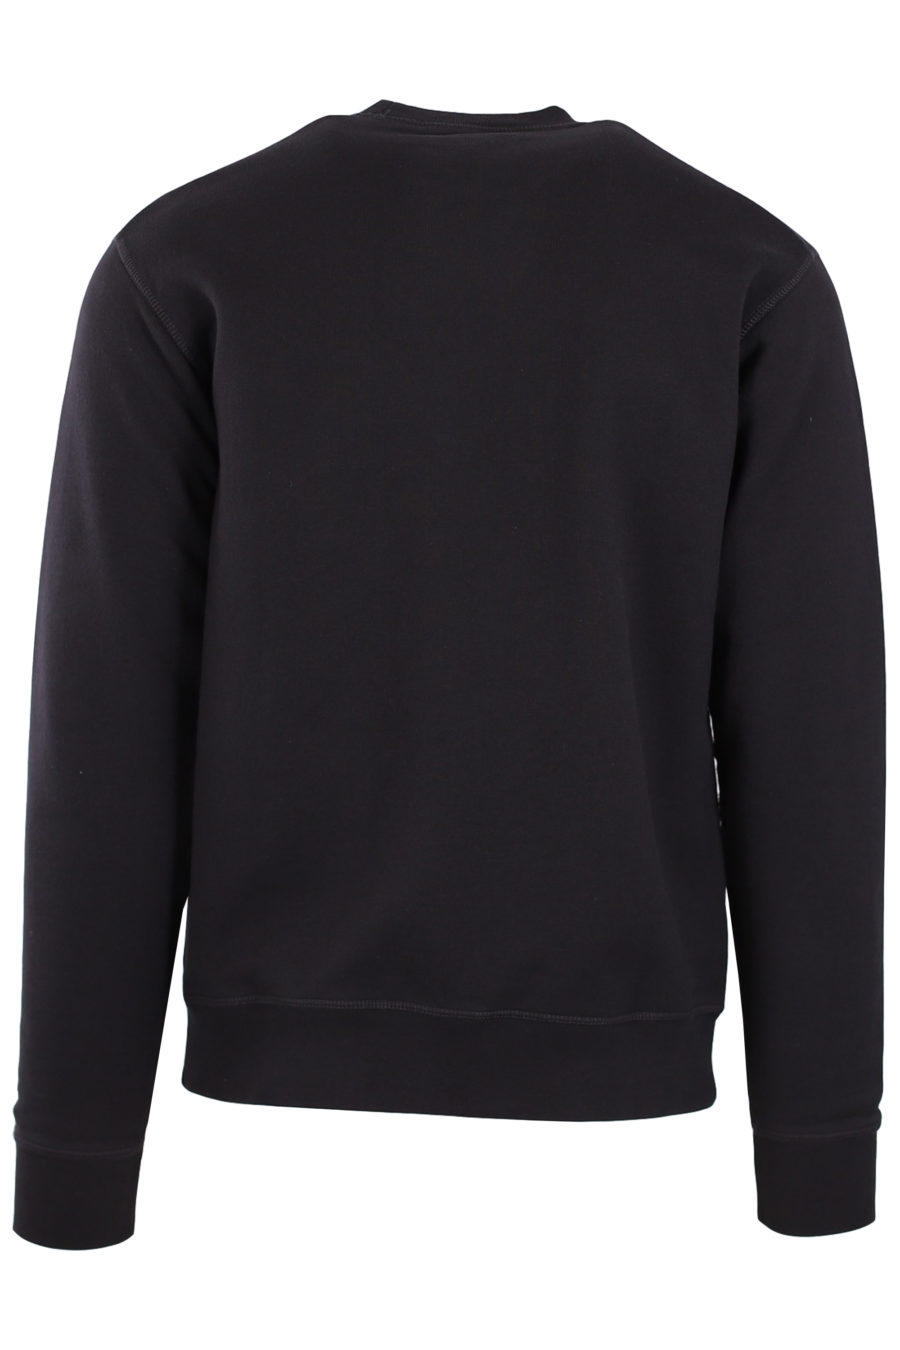 Black sweatshirt with logo "Ceresio 9 Milano" - 4031580d4c0f5f42046fa7a75f83dd64a510d660